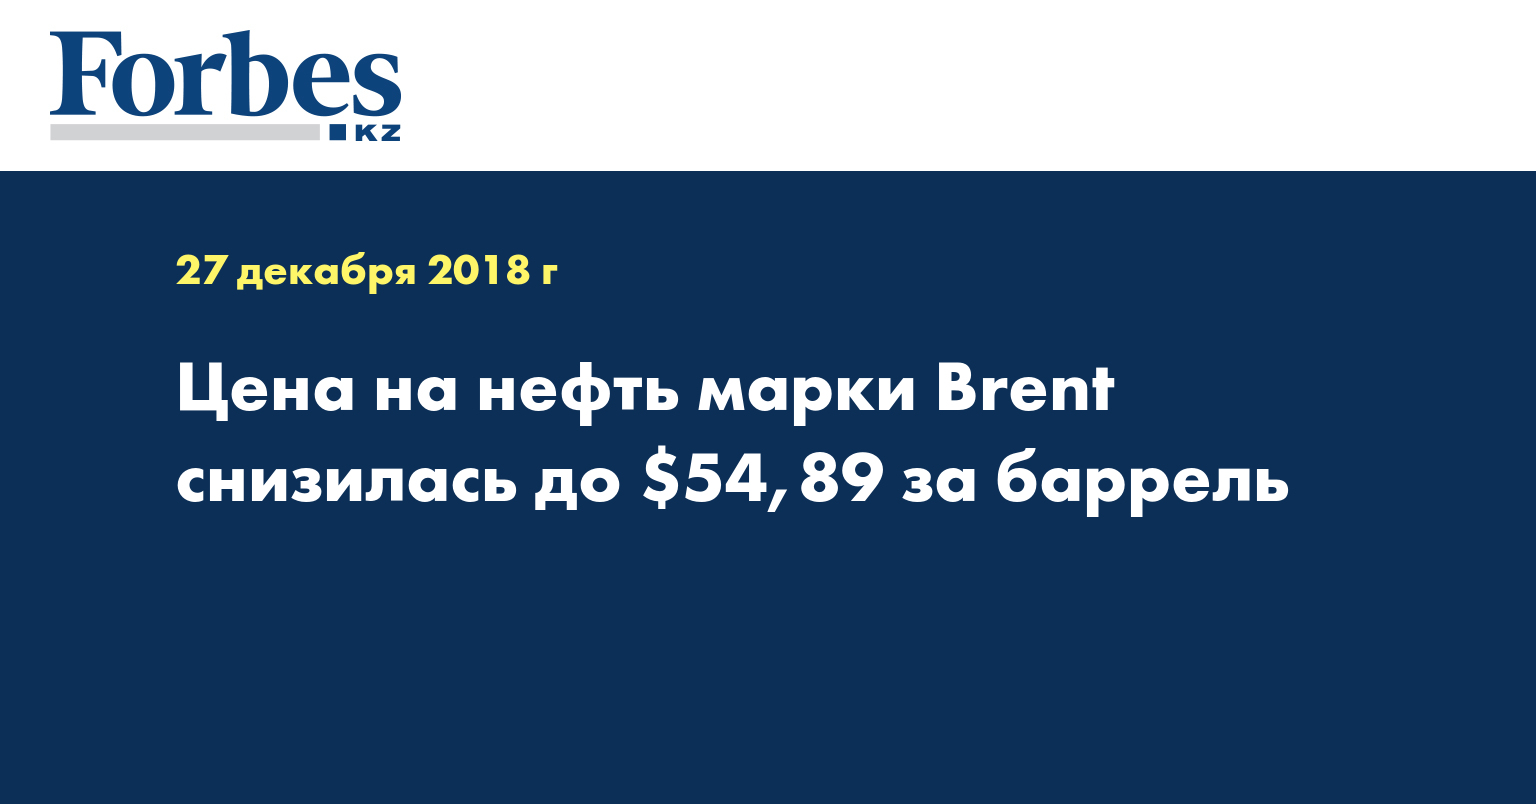 Цена на нефть марки Brent снизилась до $54,89 за баррель